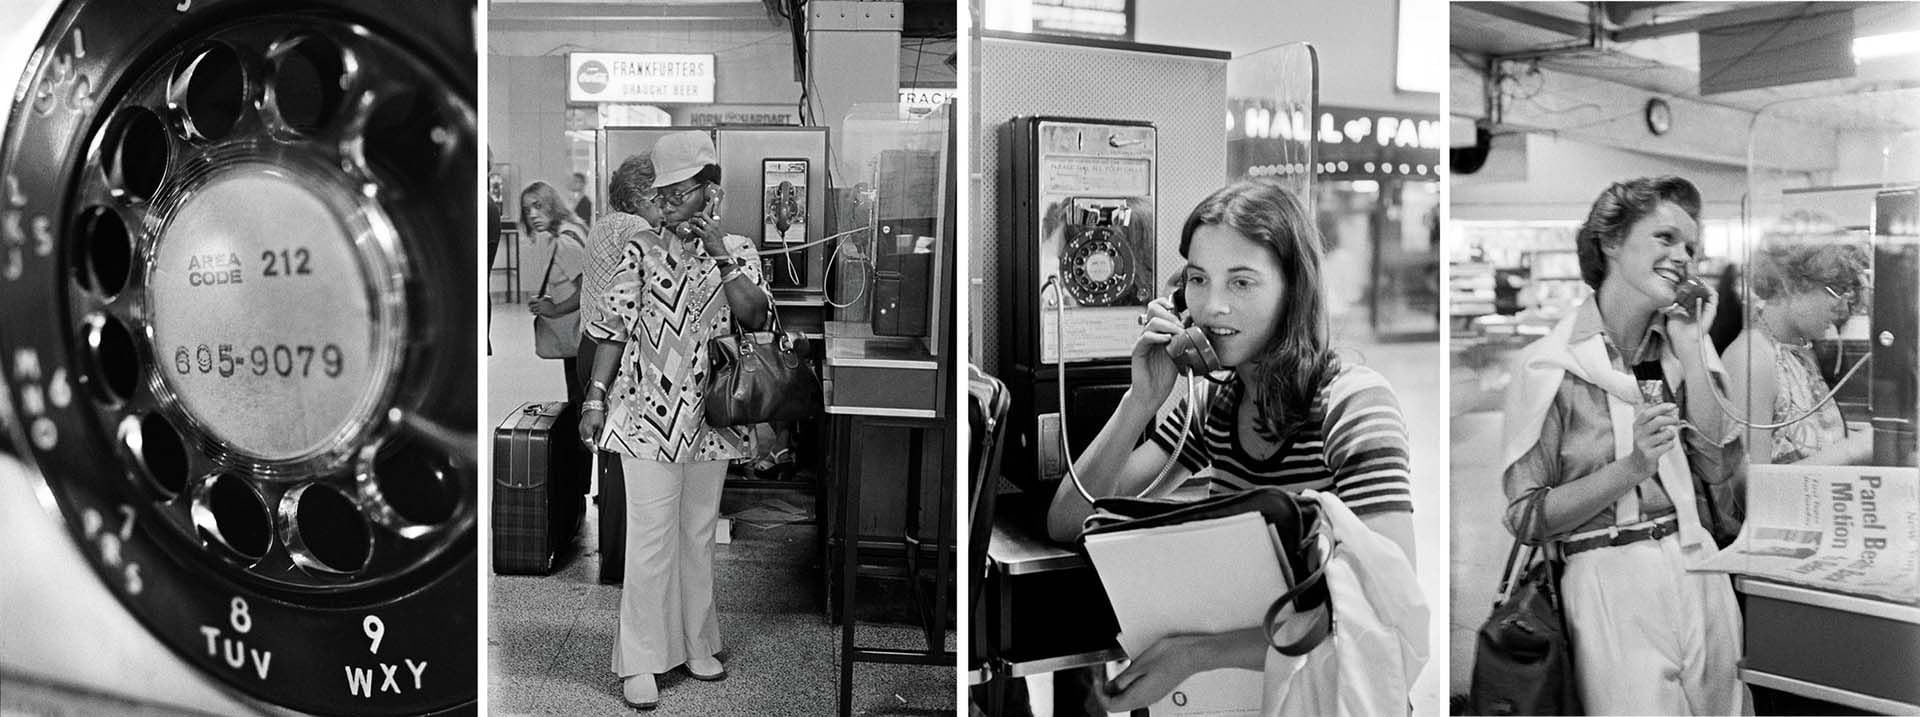 La frase nació en los años ochenta, cuando era común que las personas usaran el teléfono público. (Foto: Tyrone Dukes/The New York Times)